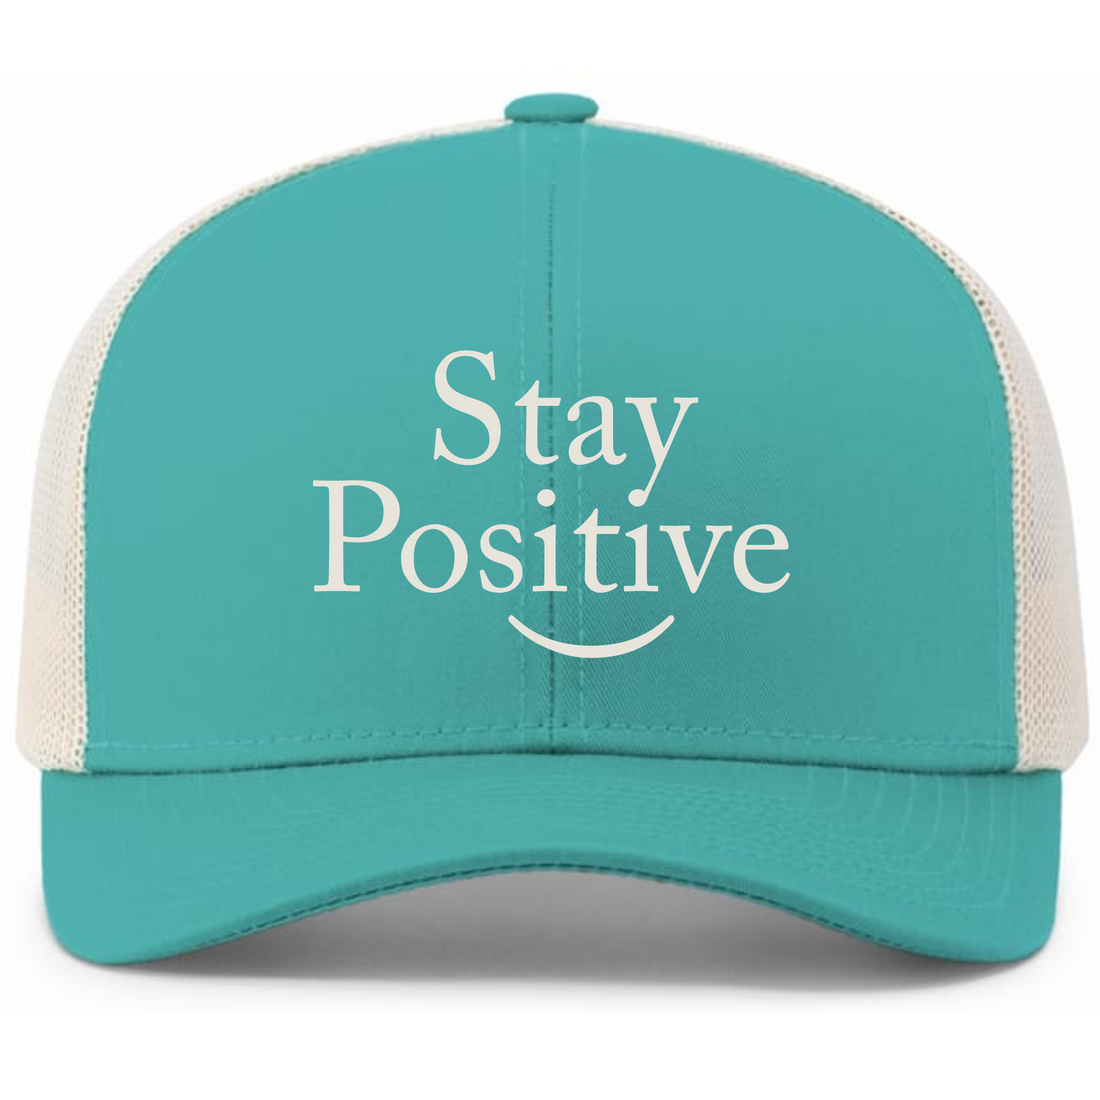 Stay Positive Trucker Snapback Hat